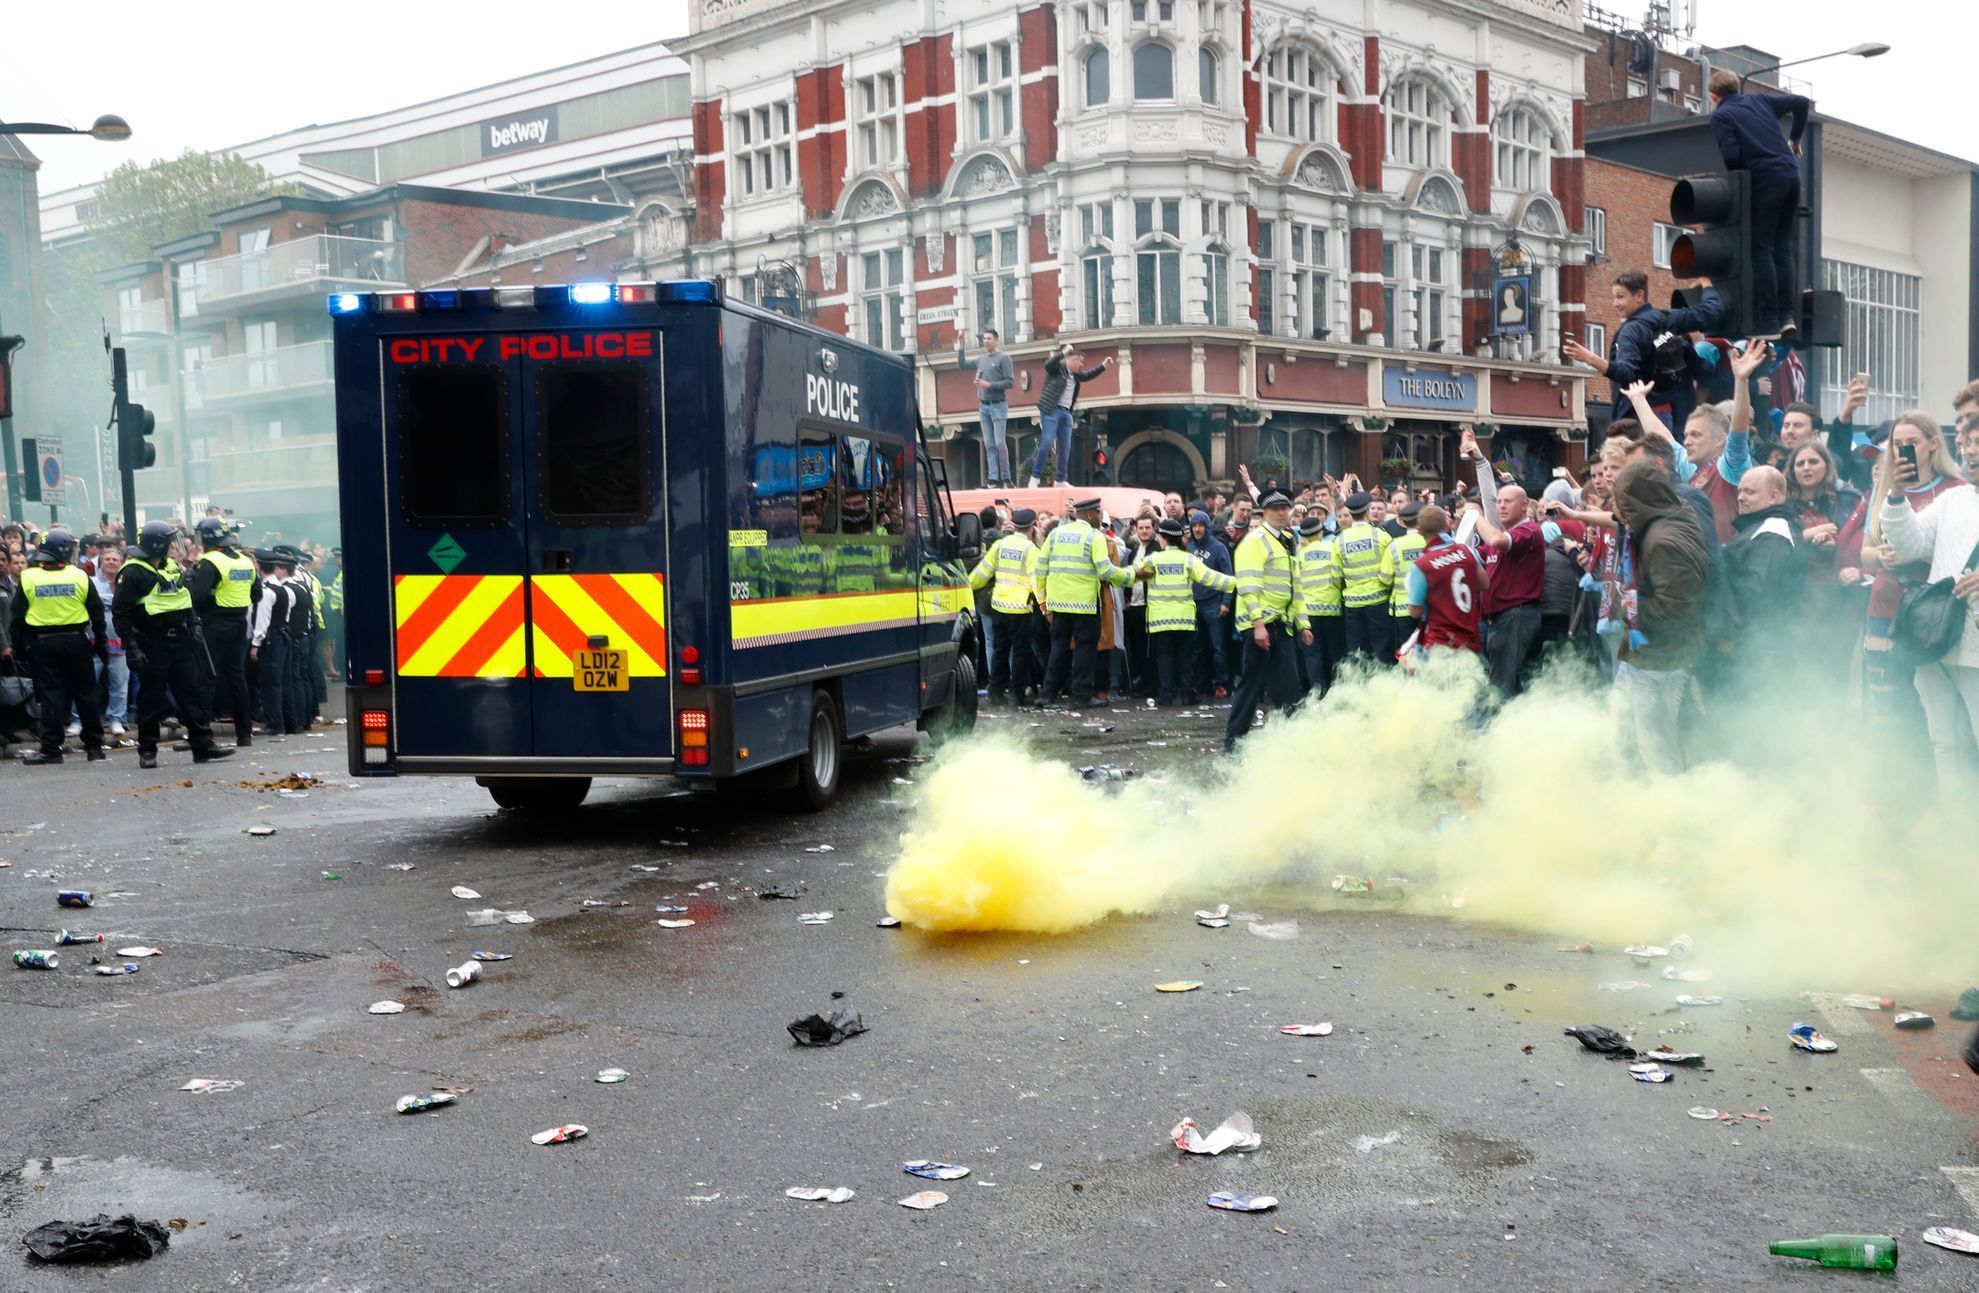 West Ham - Arsenal: bitka v ulicích před zápasem